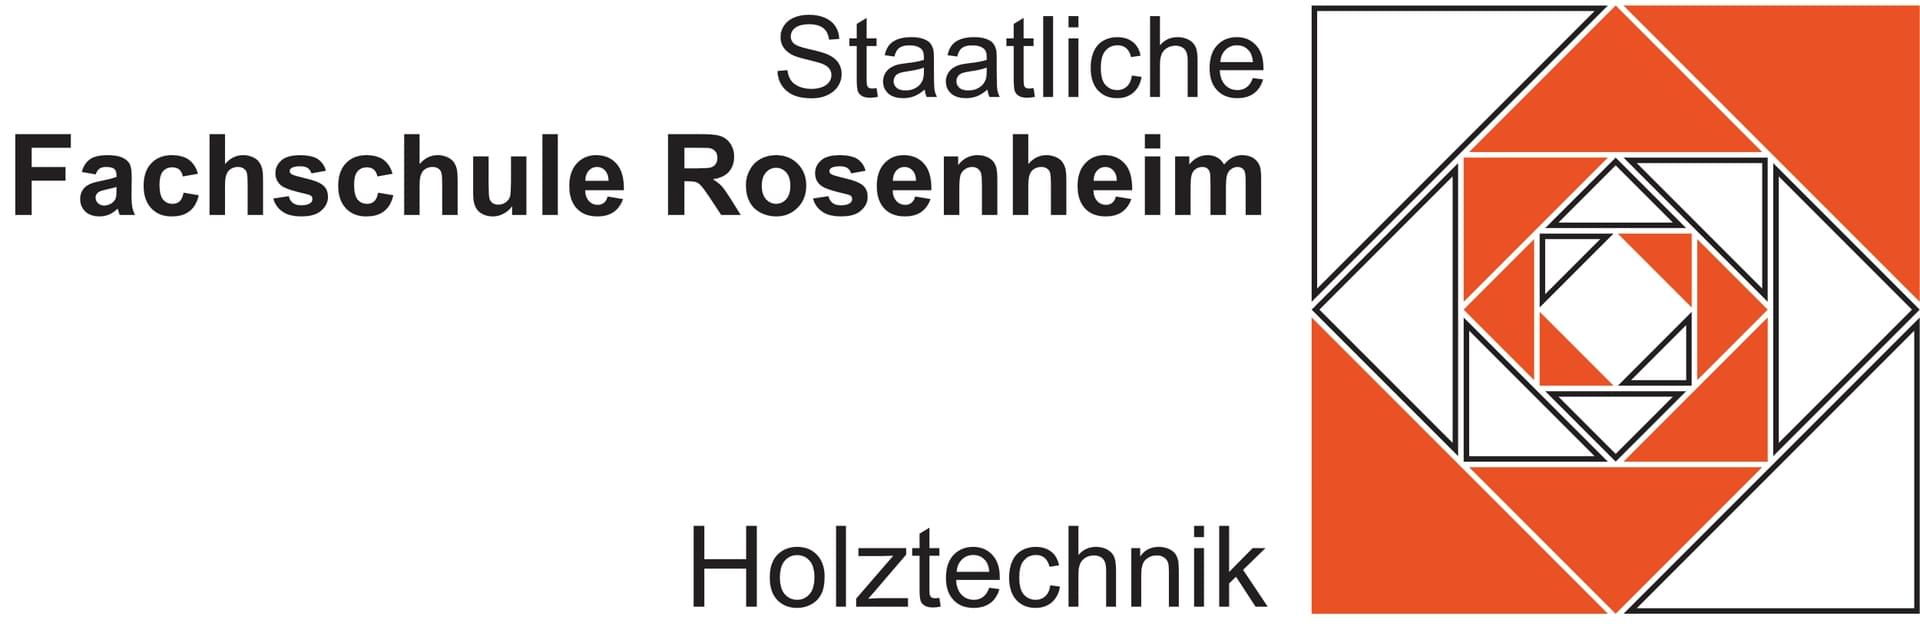 Staatliche Fachschule Rosenheim Holztechnik